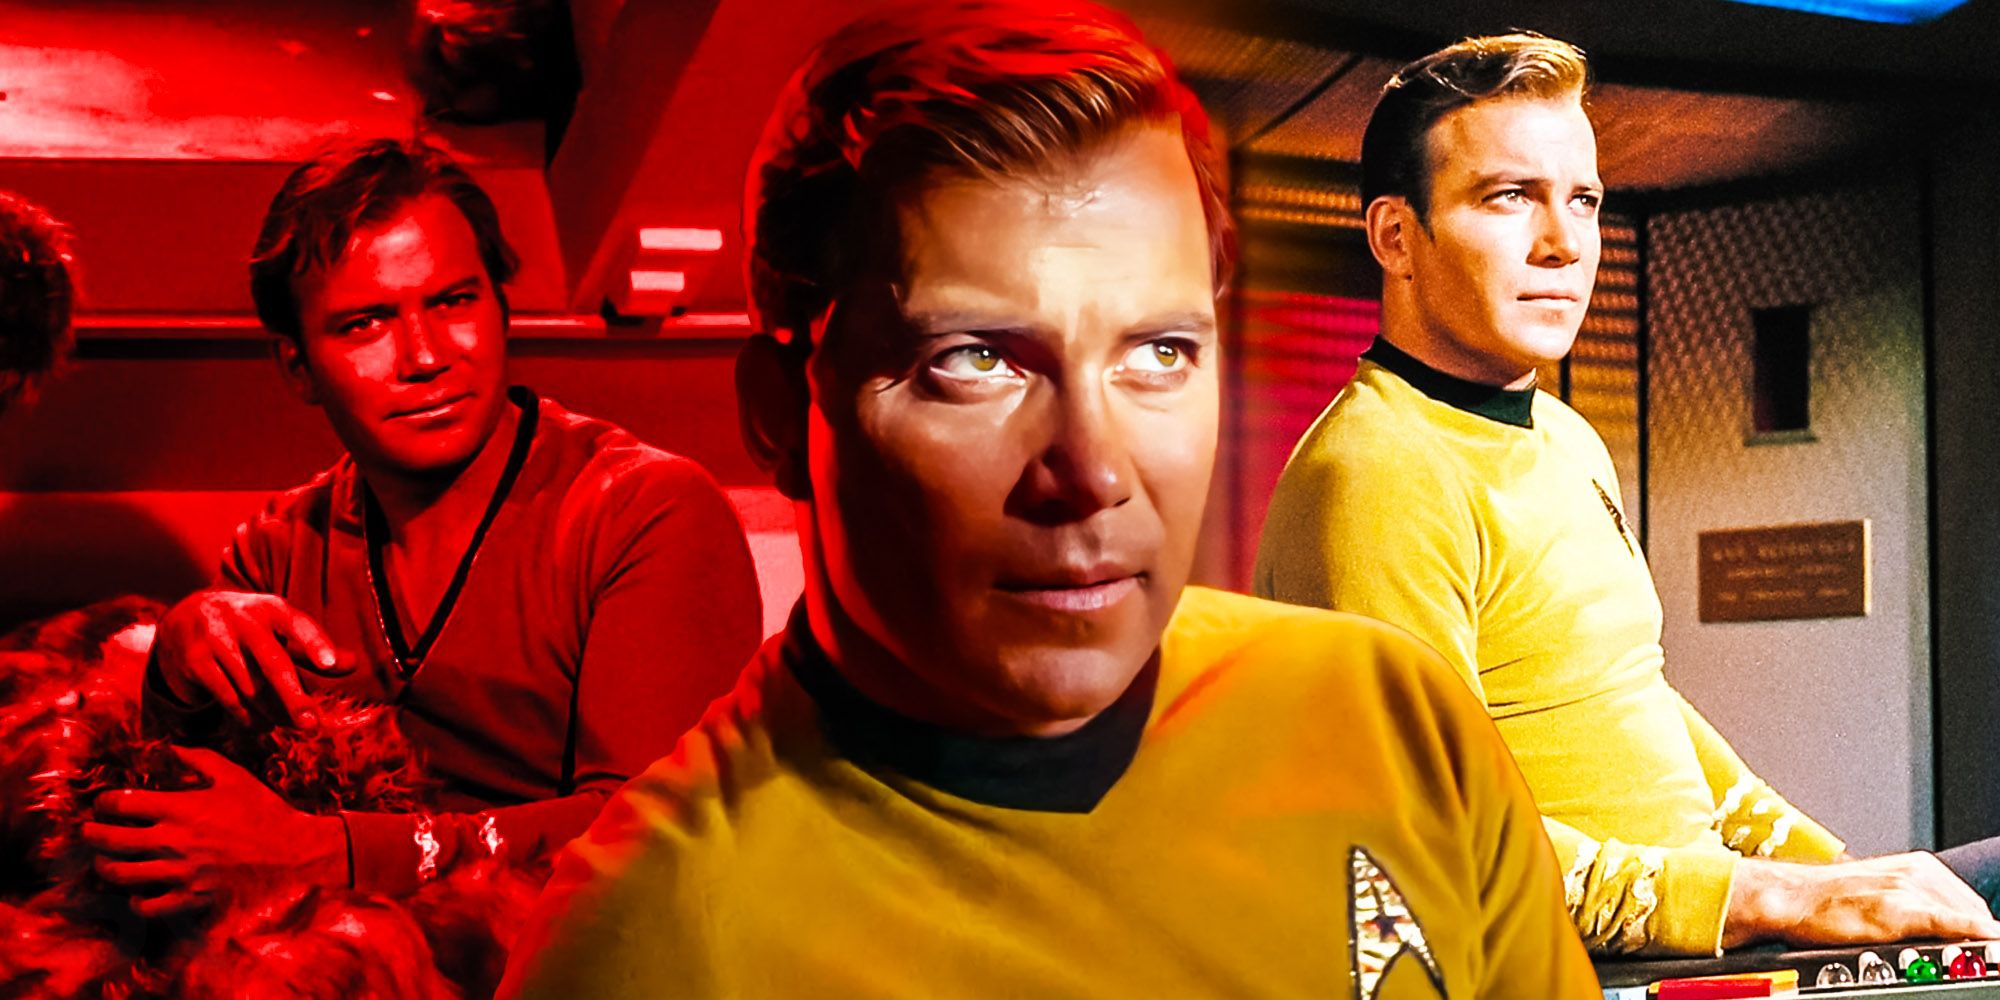 William Shatner abierto a la IA para recrear al Capitán Kirk de Star Trek “Si estoy muerto”